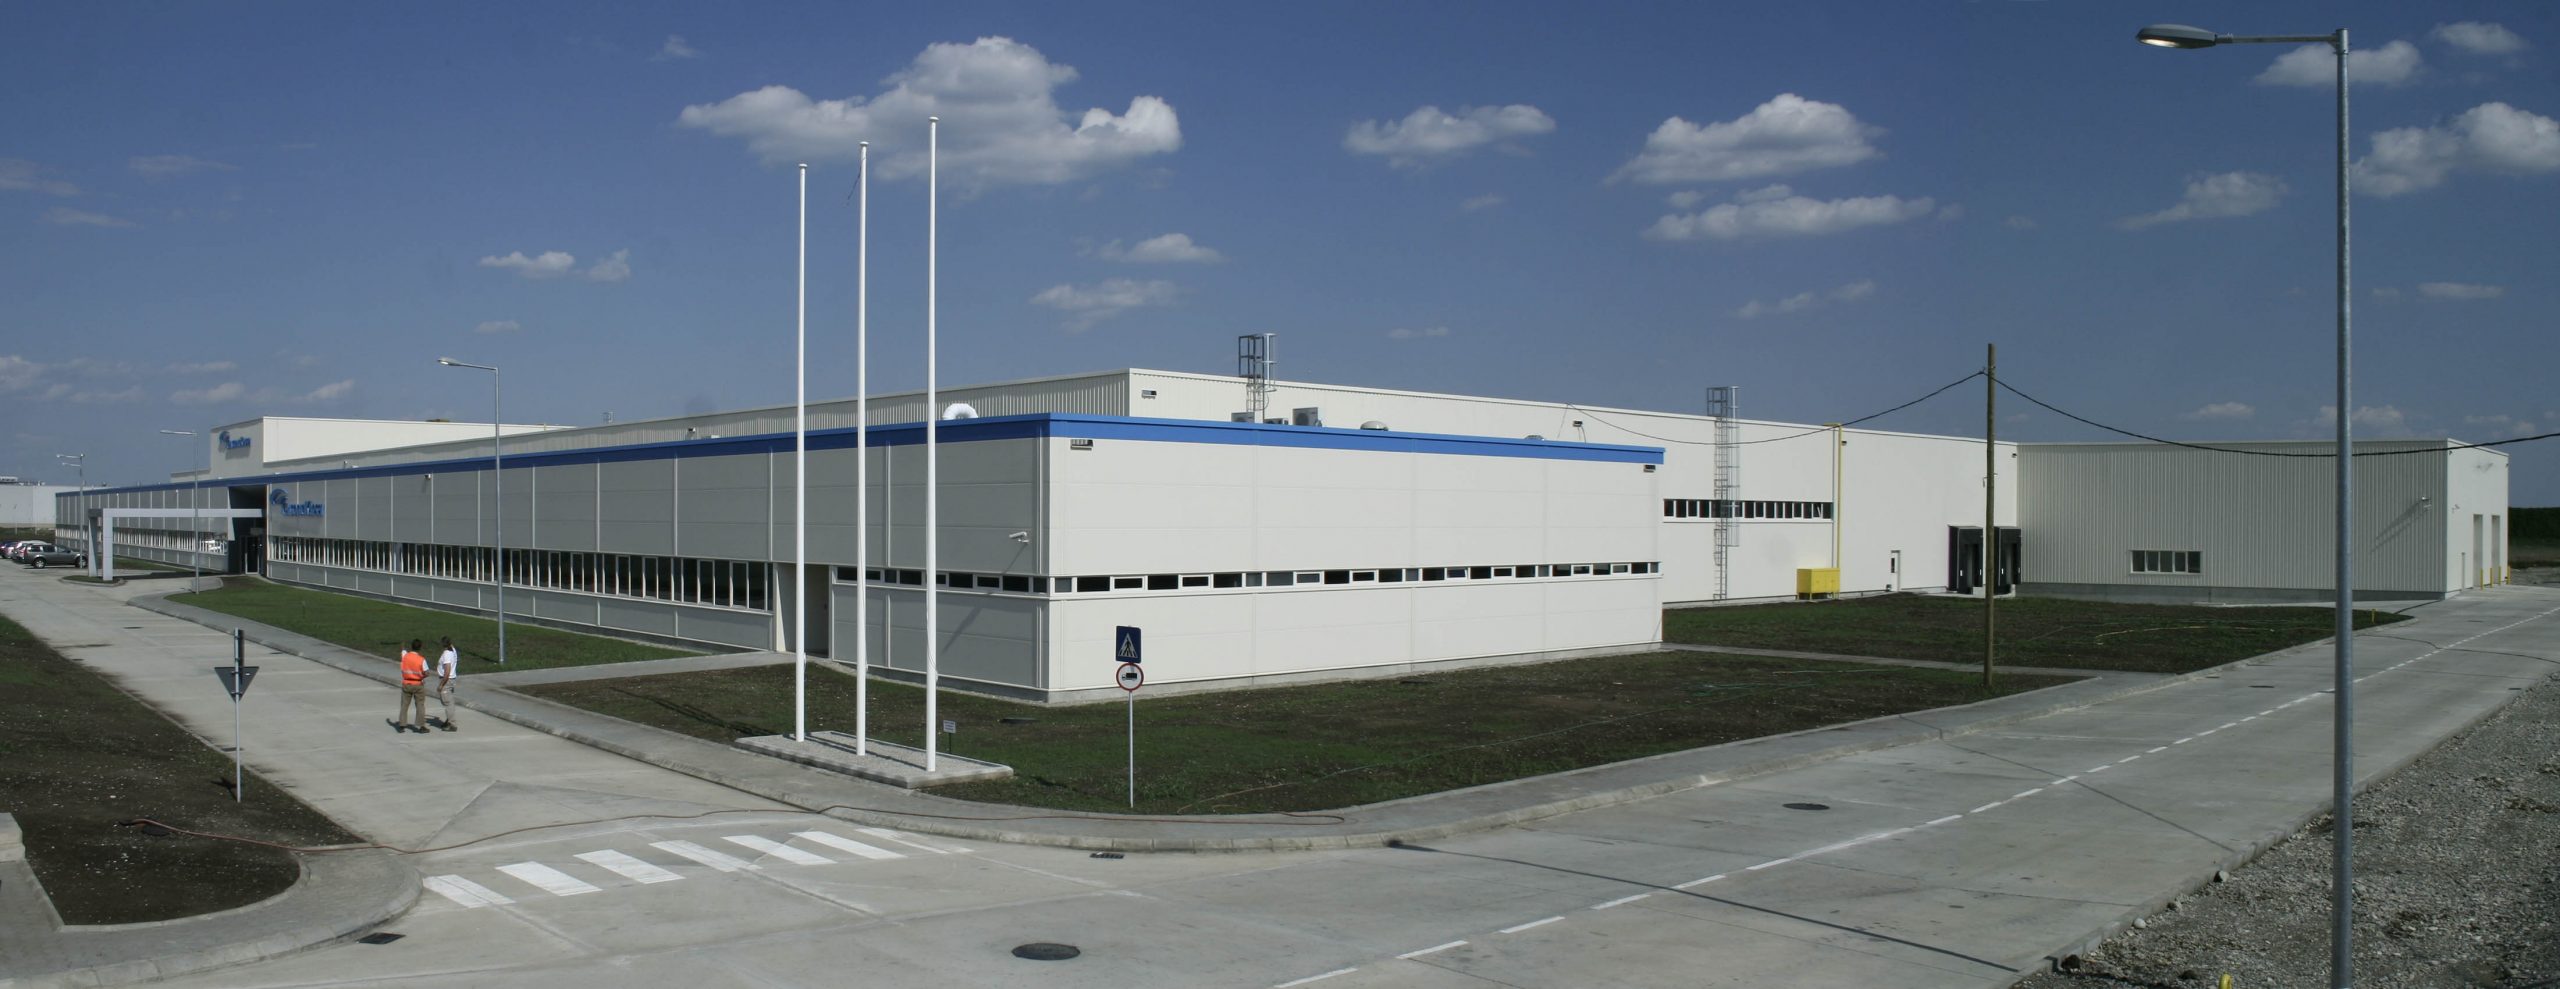 Industriekomplex mit modernem Aussehen, weiße und blaue Fassade, unter blauem Himmel, Personen im Vordergrund.